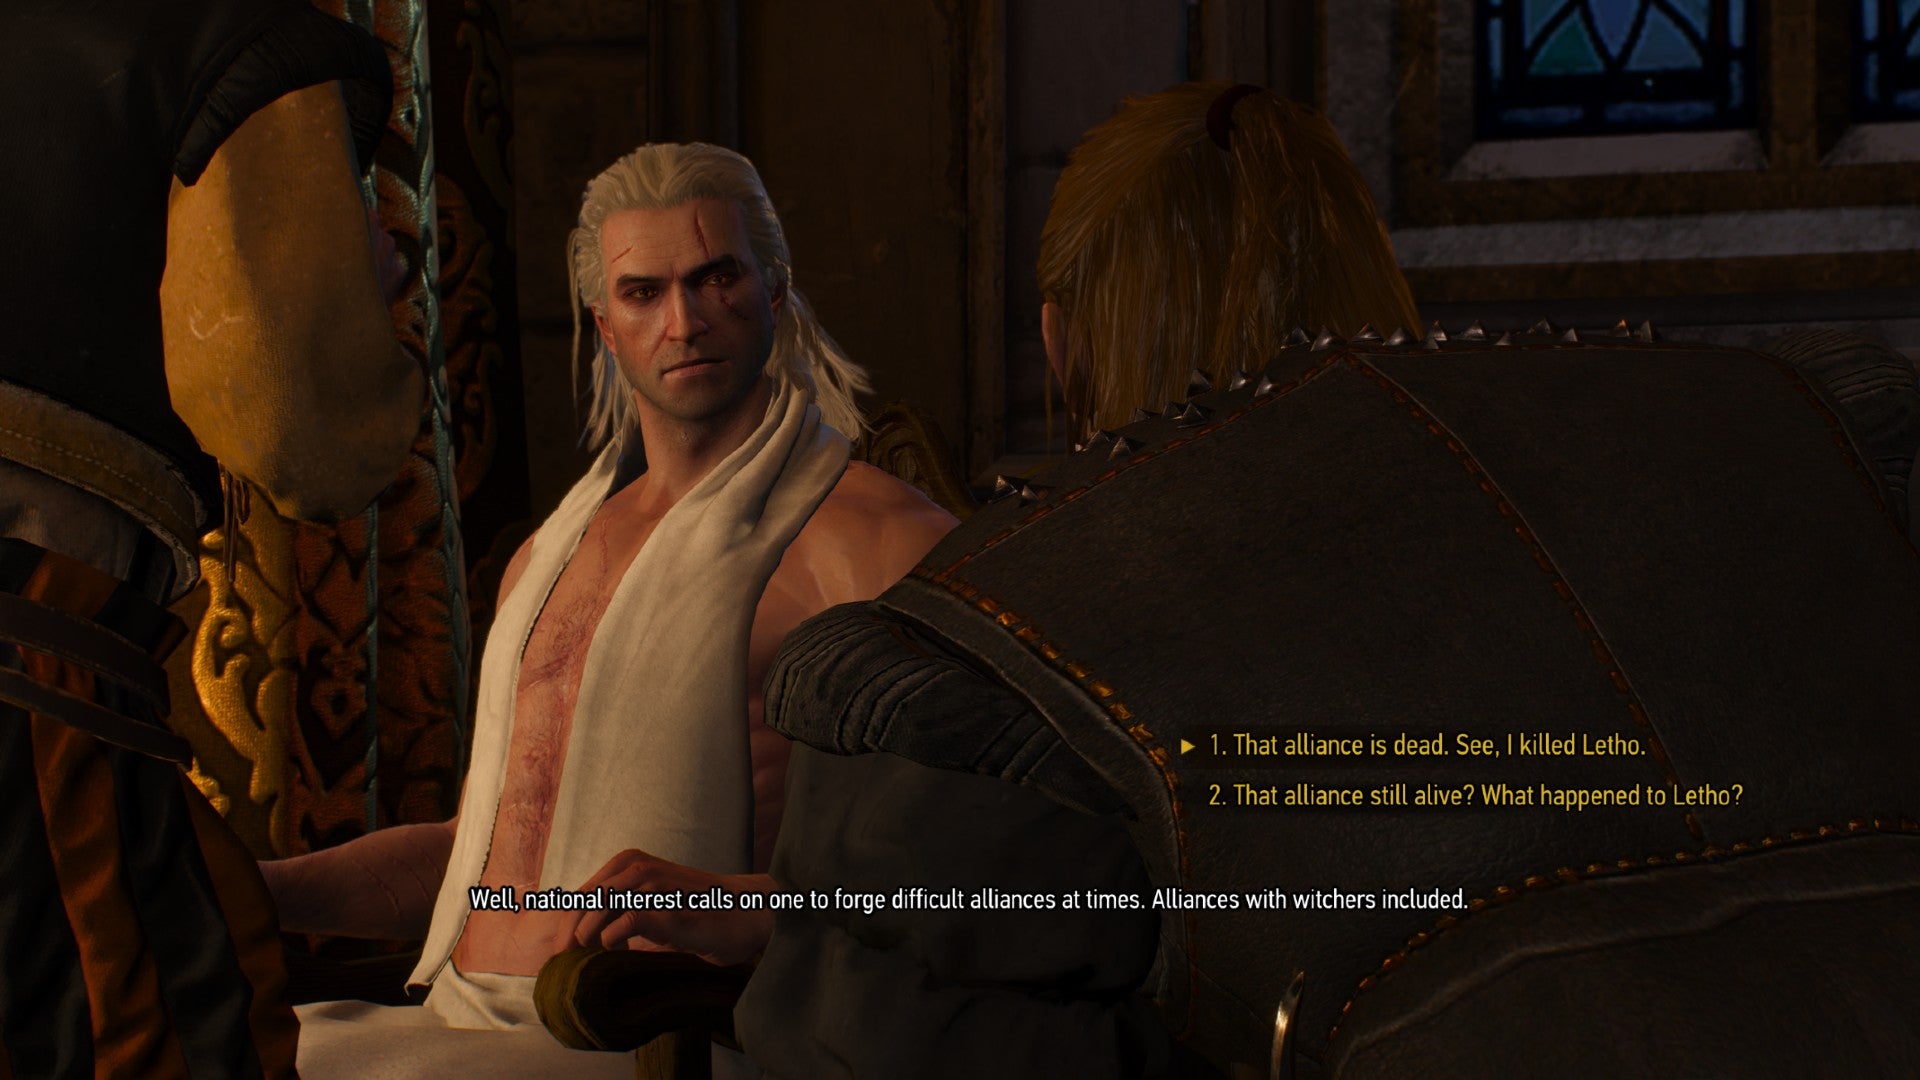 Captura de pantalla de Witcher 3 que muestra la quinta opción de diálogo en la conversación simulada de Witcher 2.